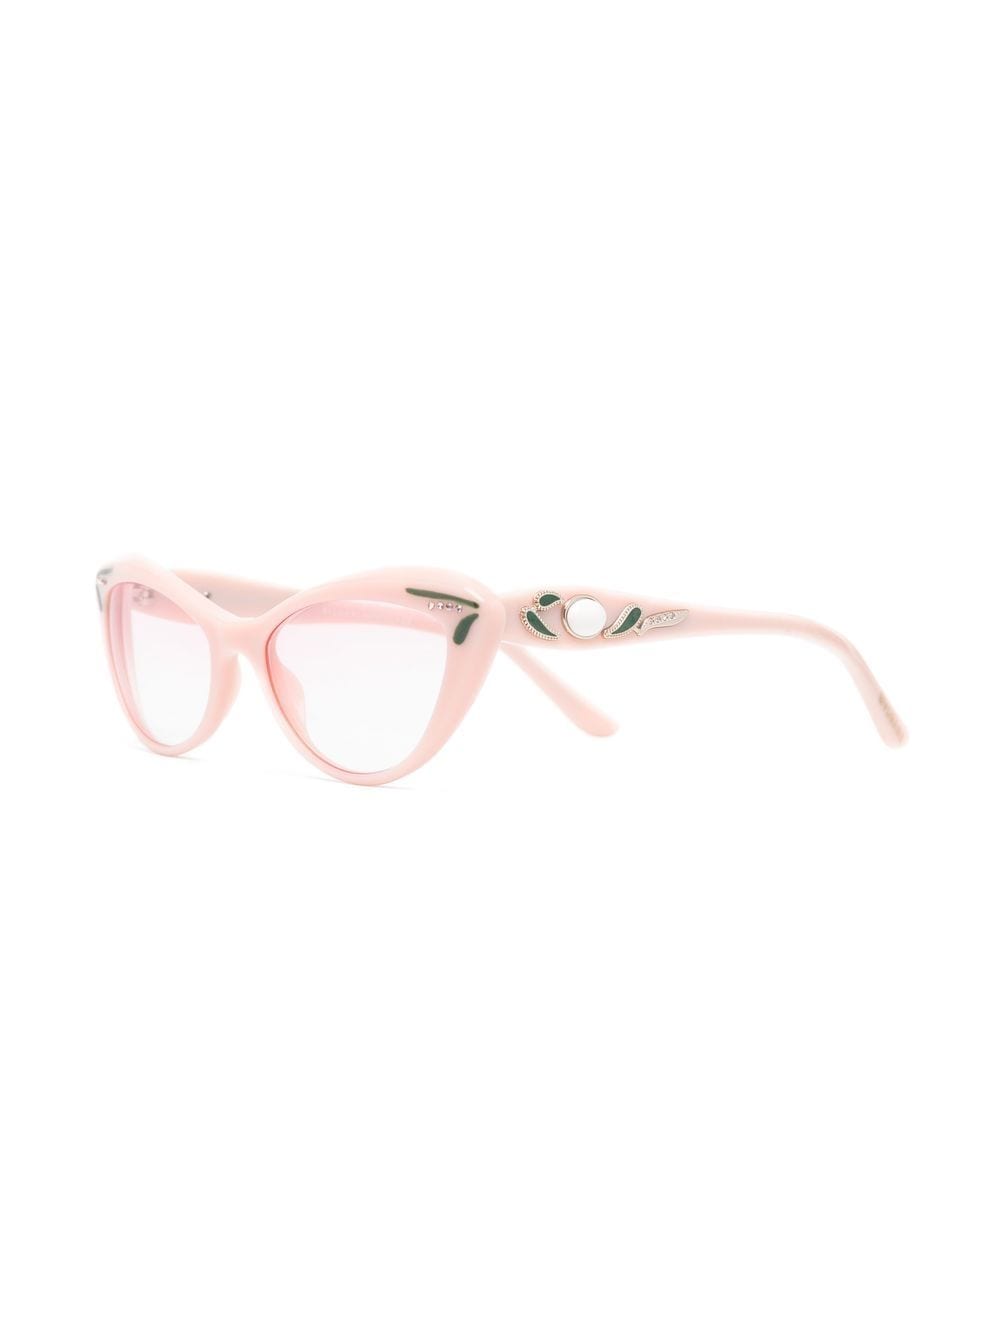 Bvlgari Pre-Owned 2010s bril met cat-eye montuur - Roze